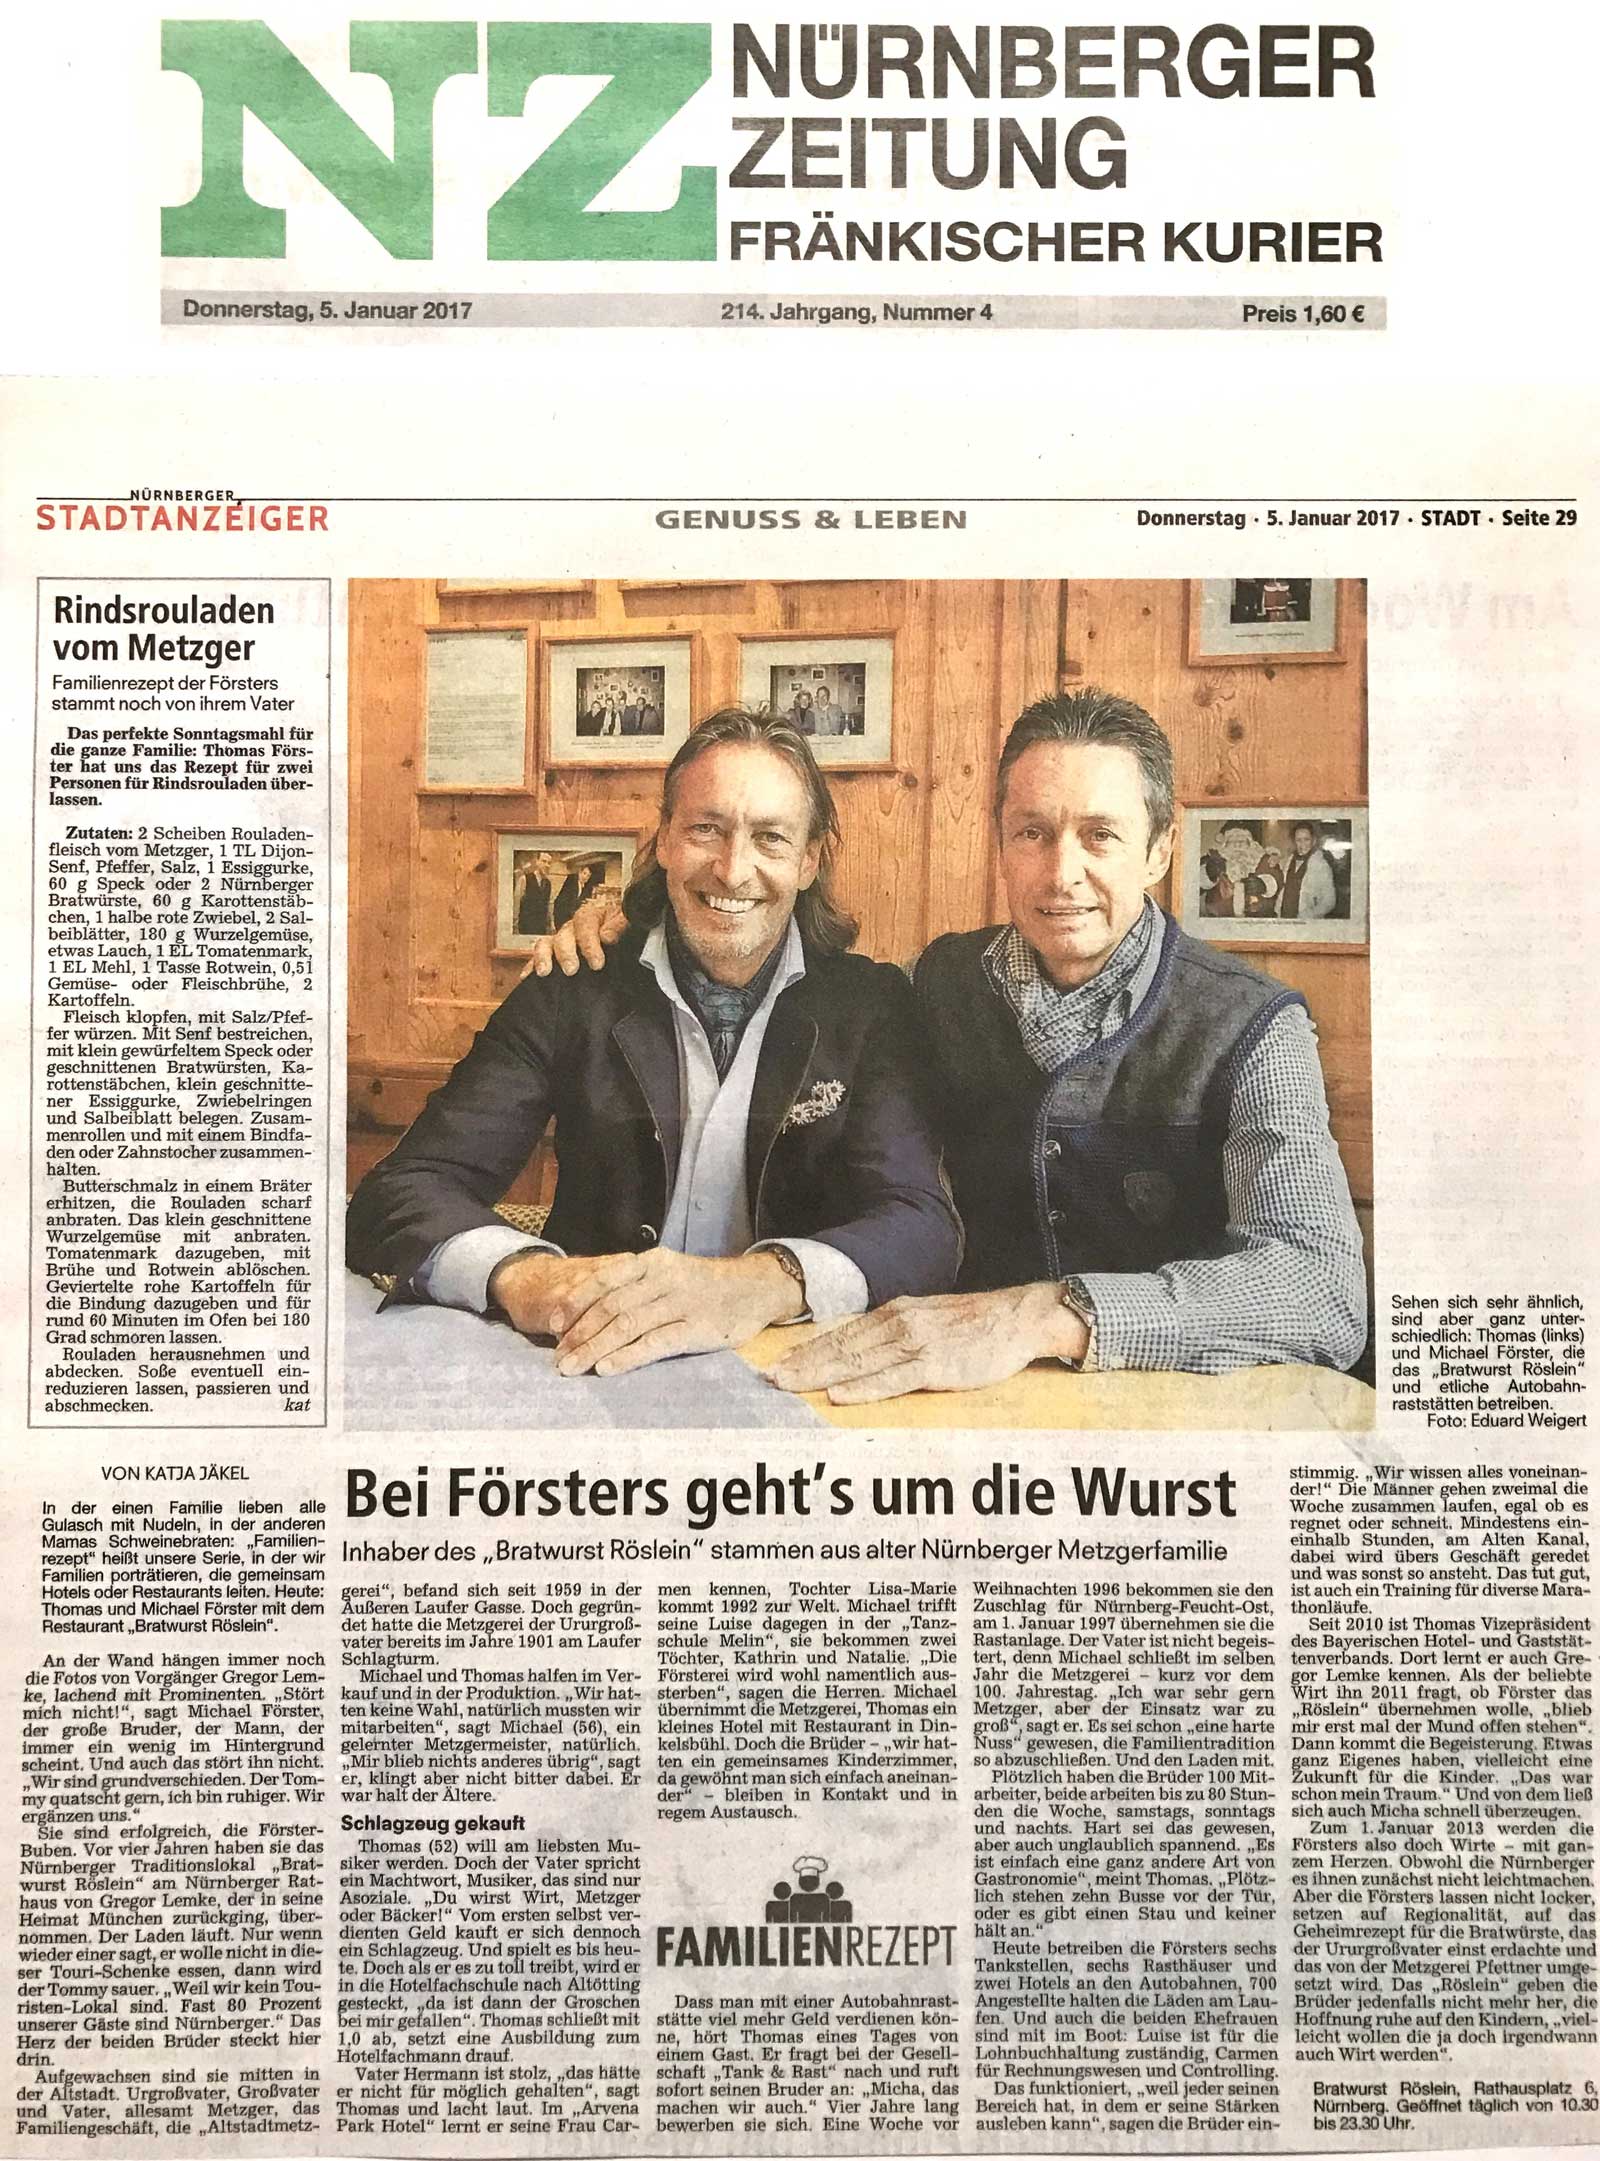 Bei den Förster geht´s um die Wurst, Nürnberger Zeitung, 5. Januar 2017